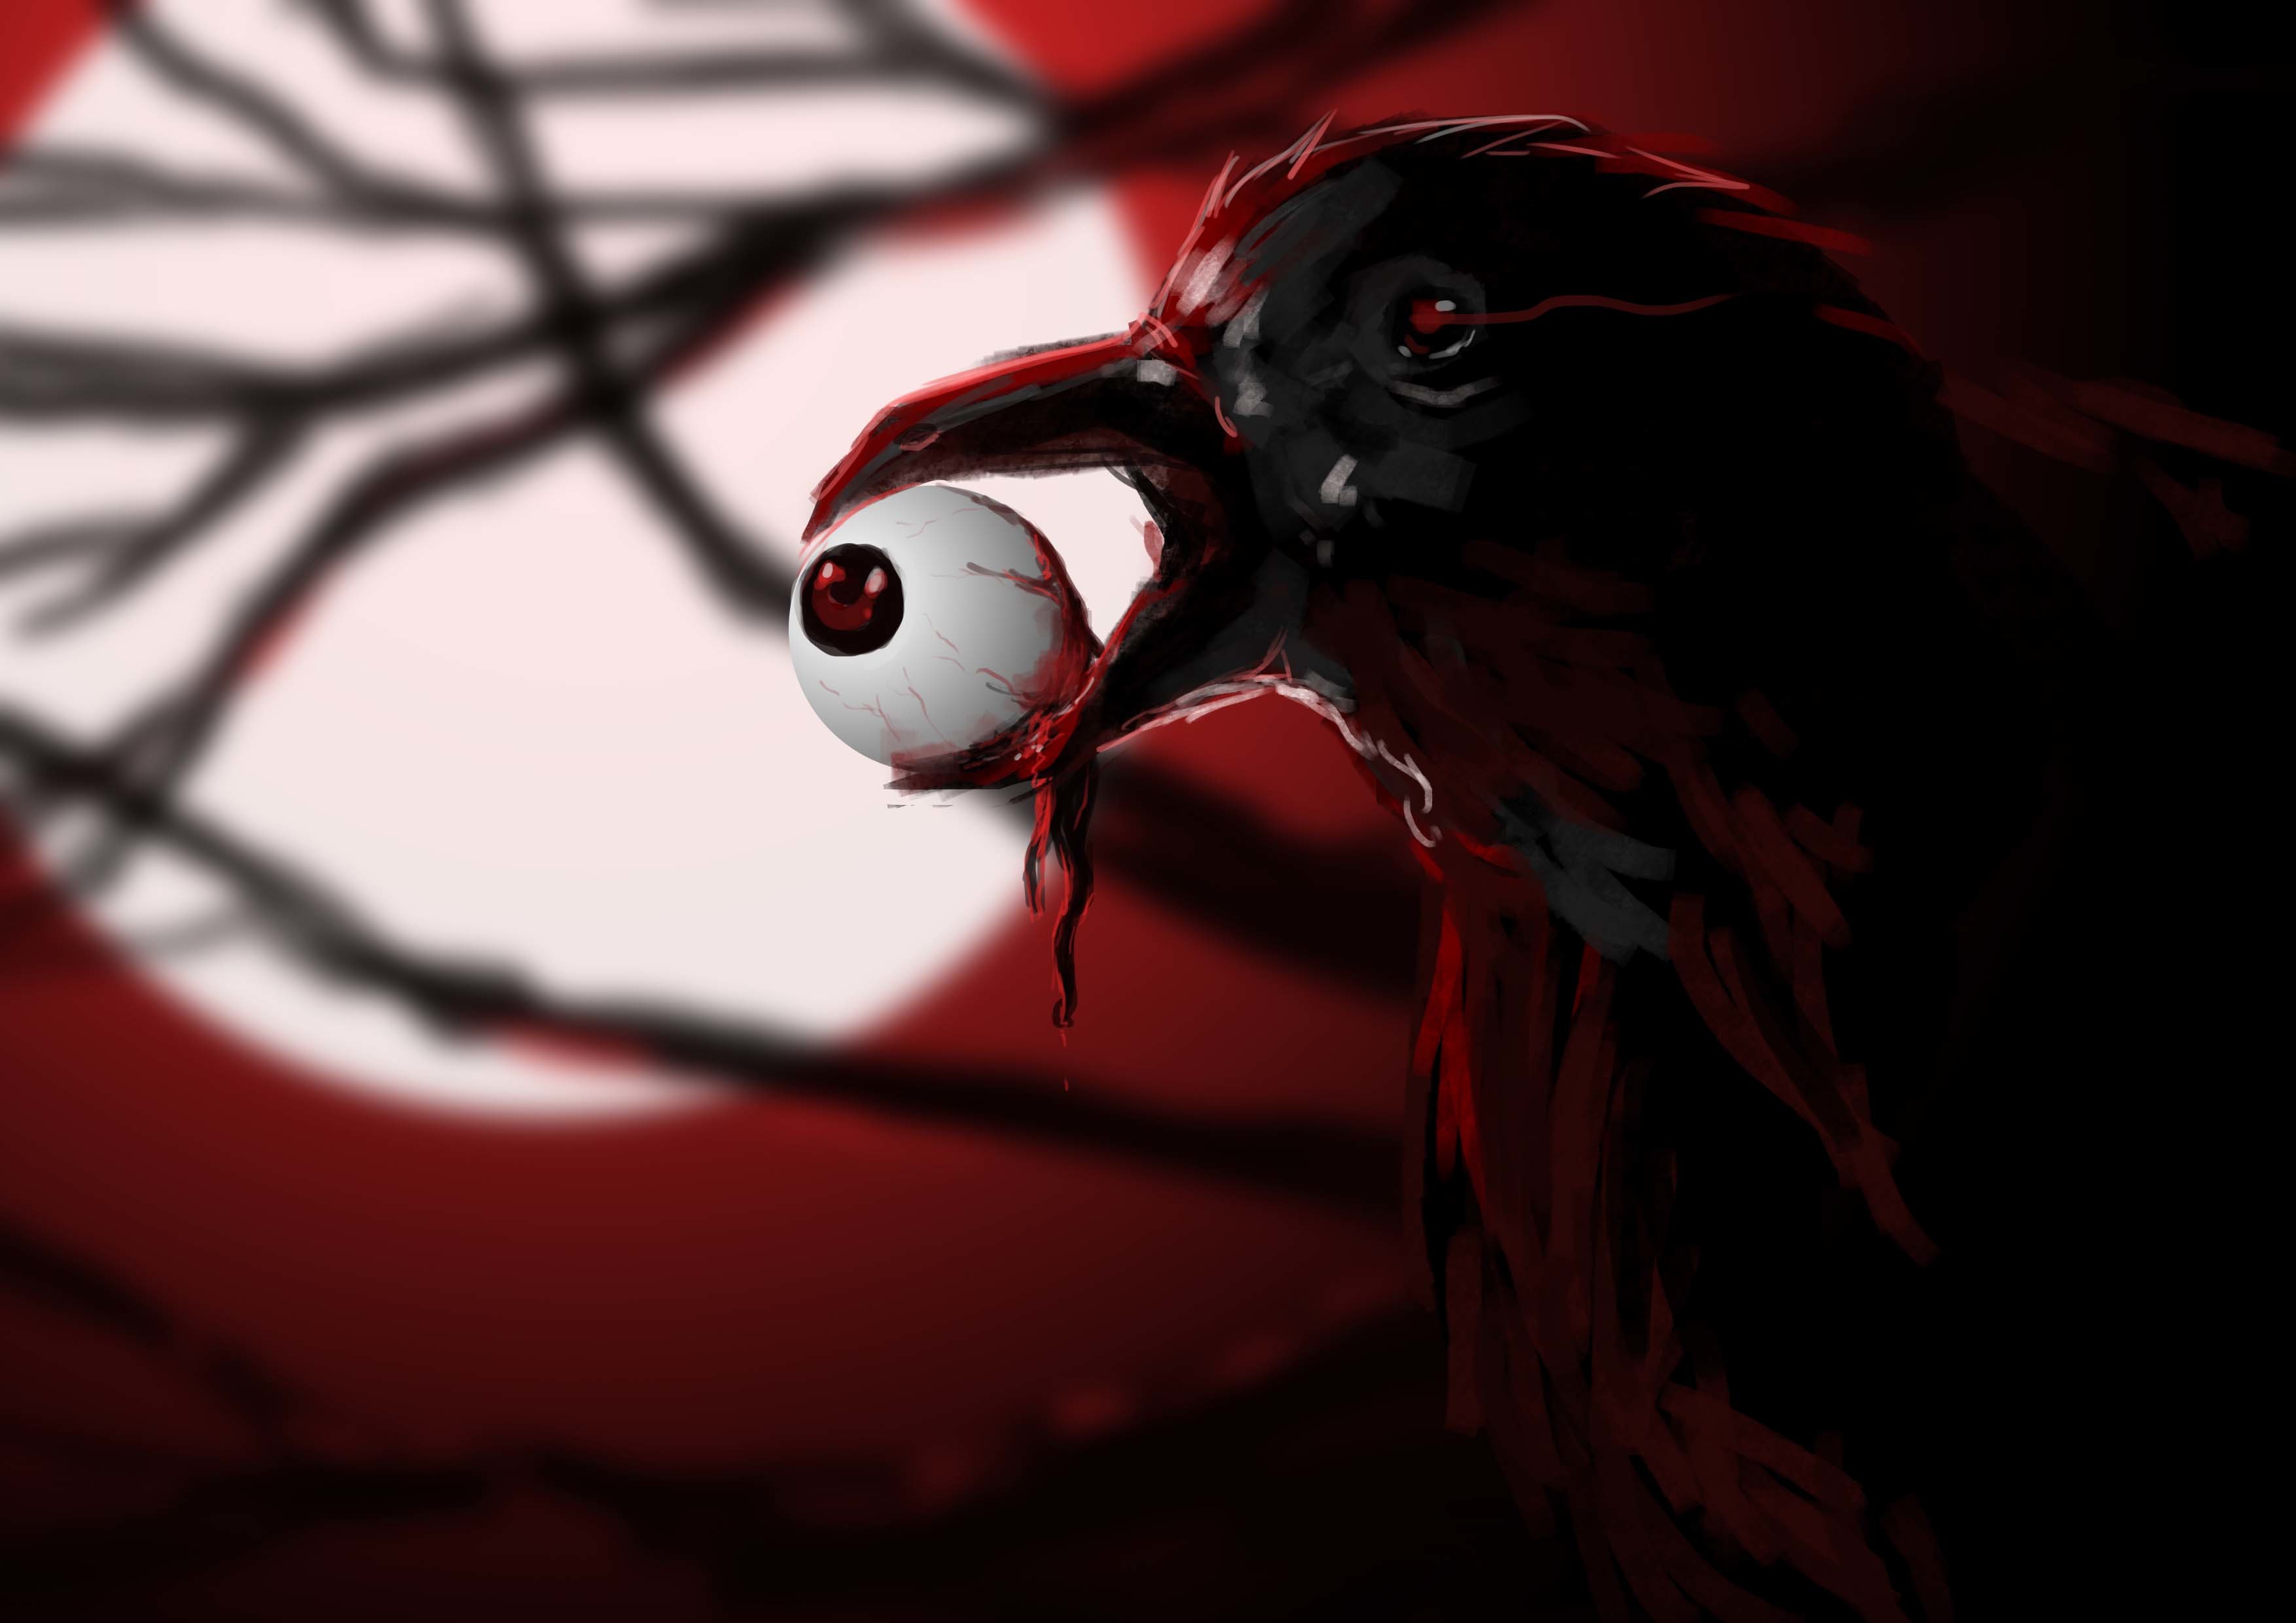 Raven with Eyeball